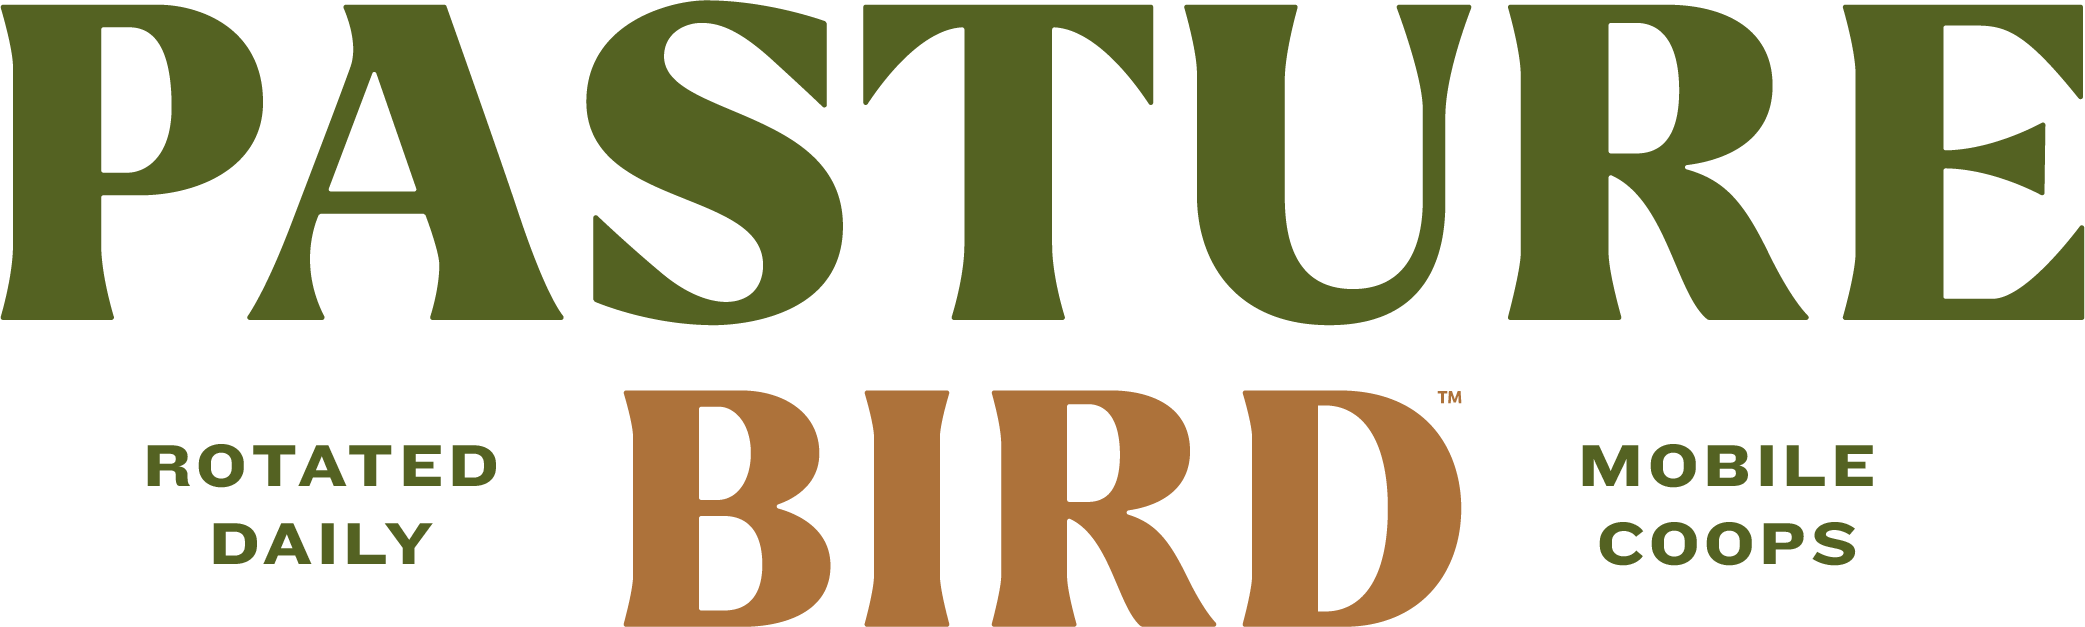 Pasturebird